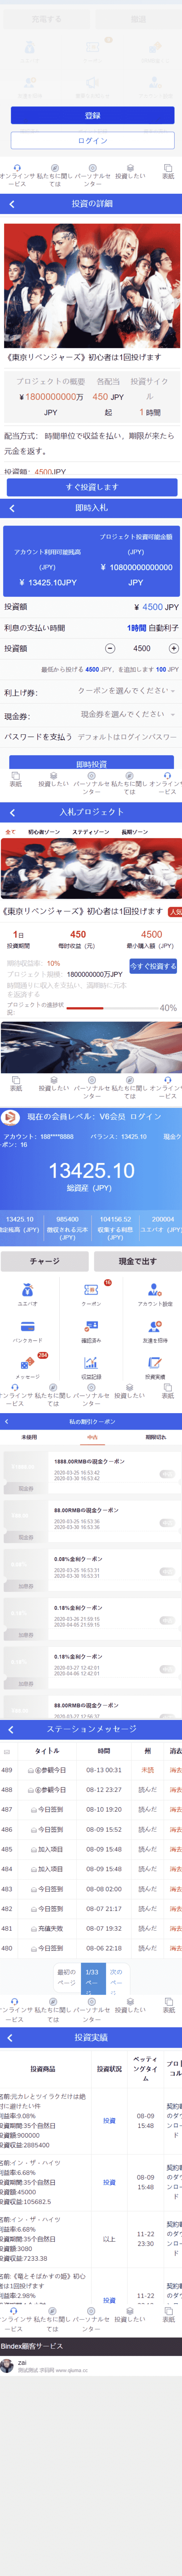 全新UI影视投资/日语投资系统/优惠加息送卷/虚拟币充值/在线客服插图1